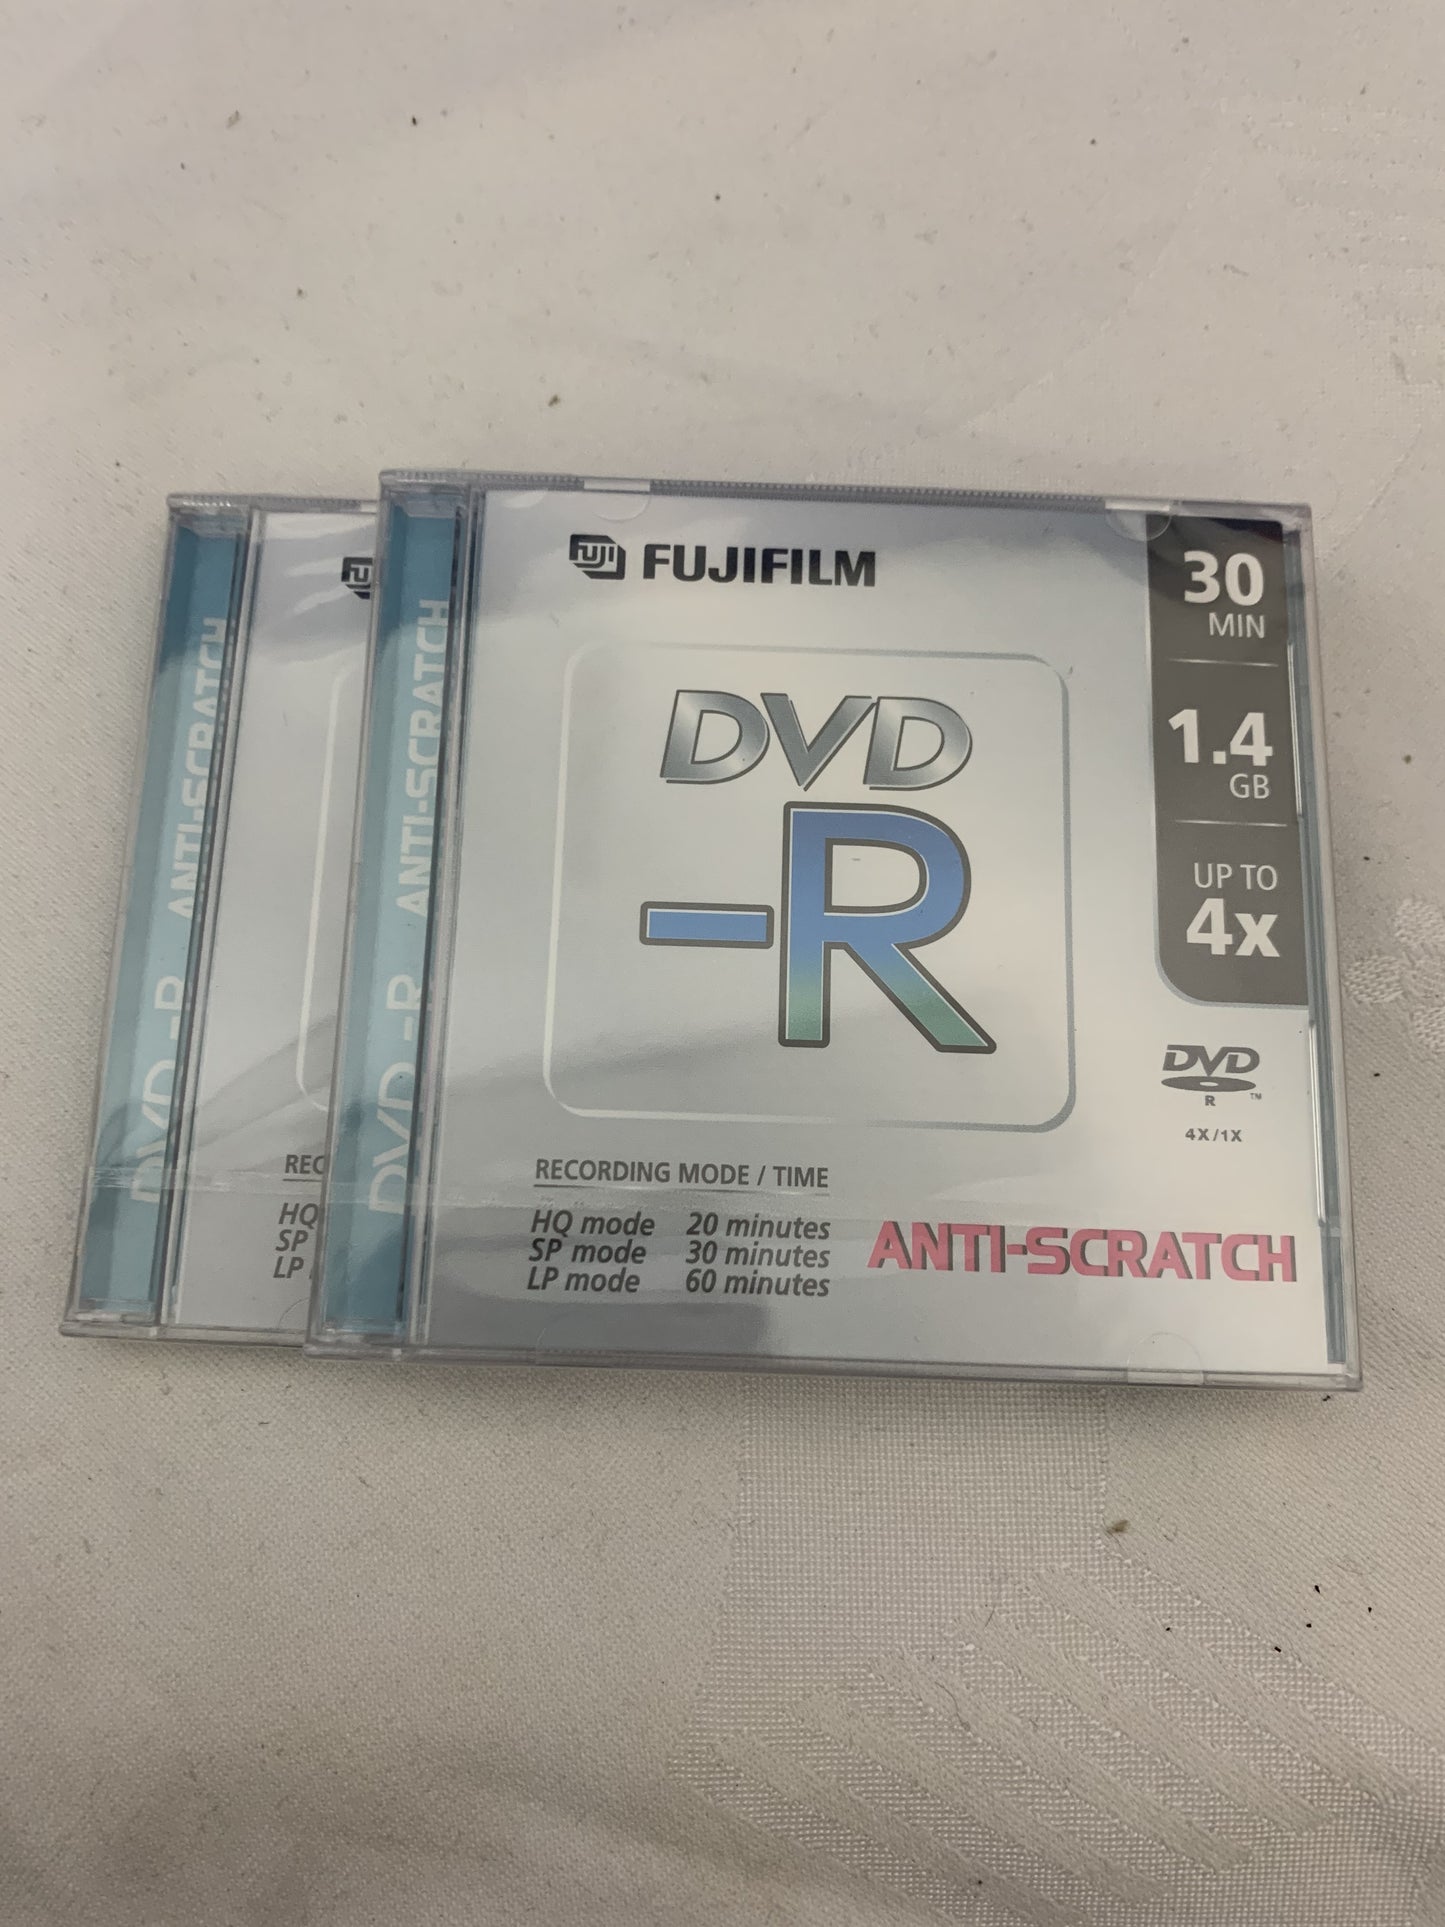 FujiFilm , DVD -R, 30 min, 1.4 GB, 2 stk